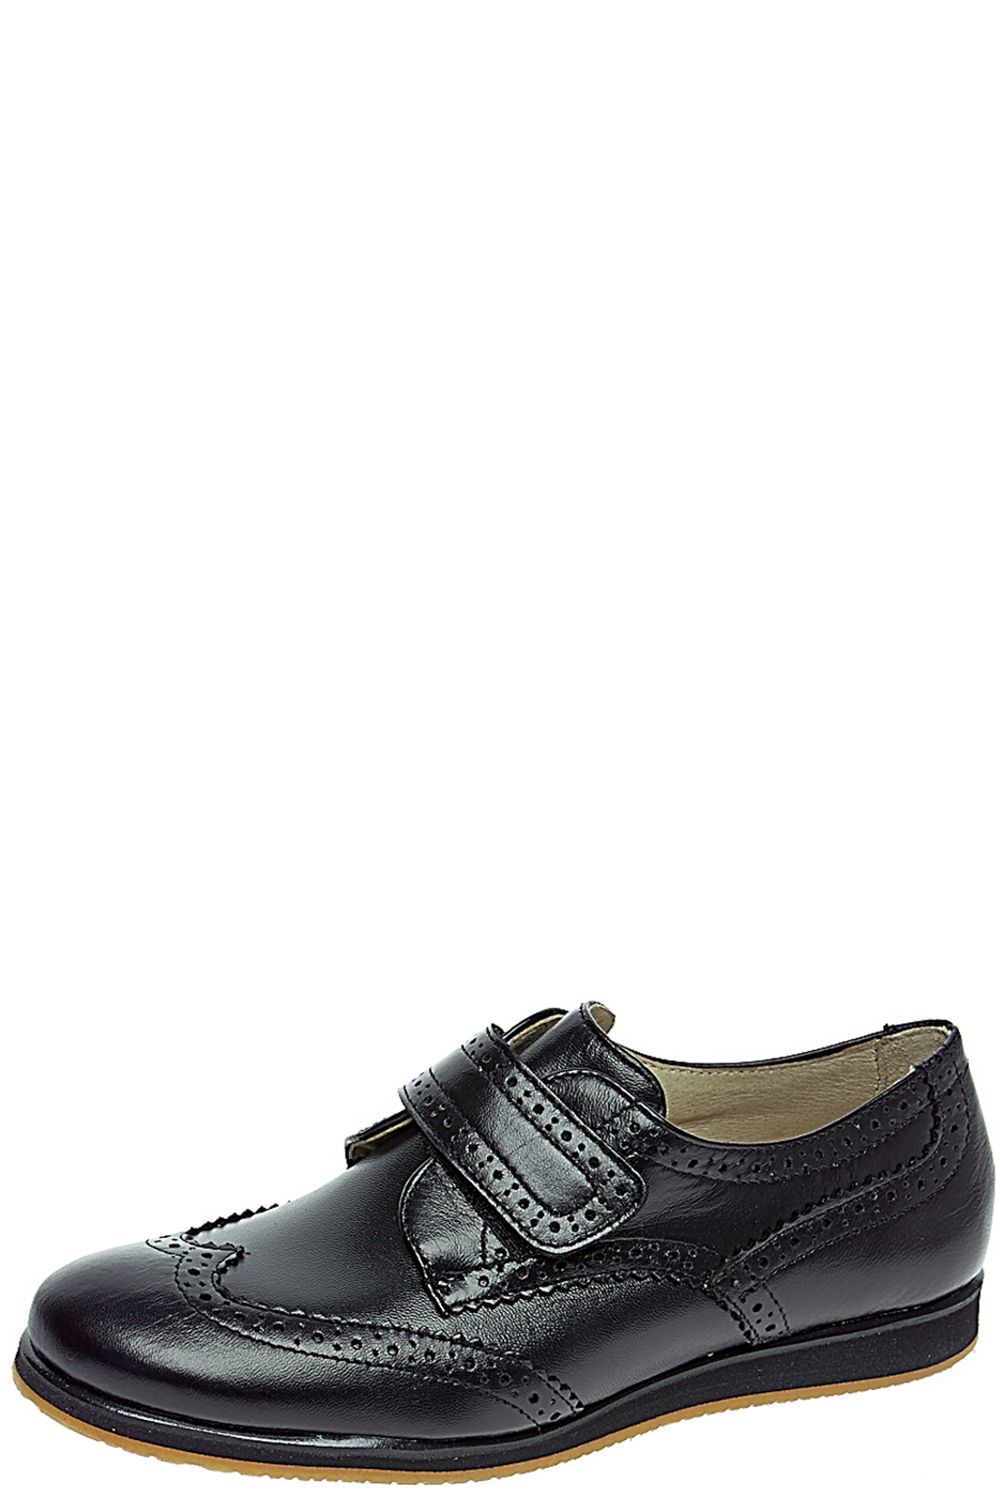 Туфли Tny, размер 31, цвет черный 2624/090/CA/EVA/66RIK - фото 1